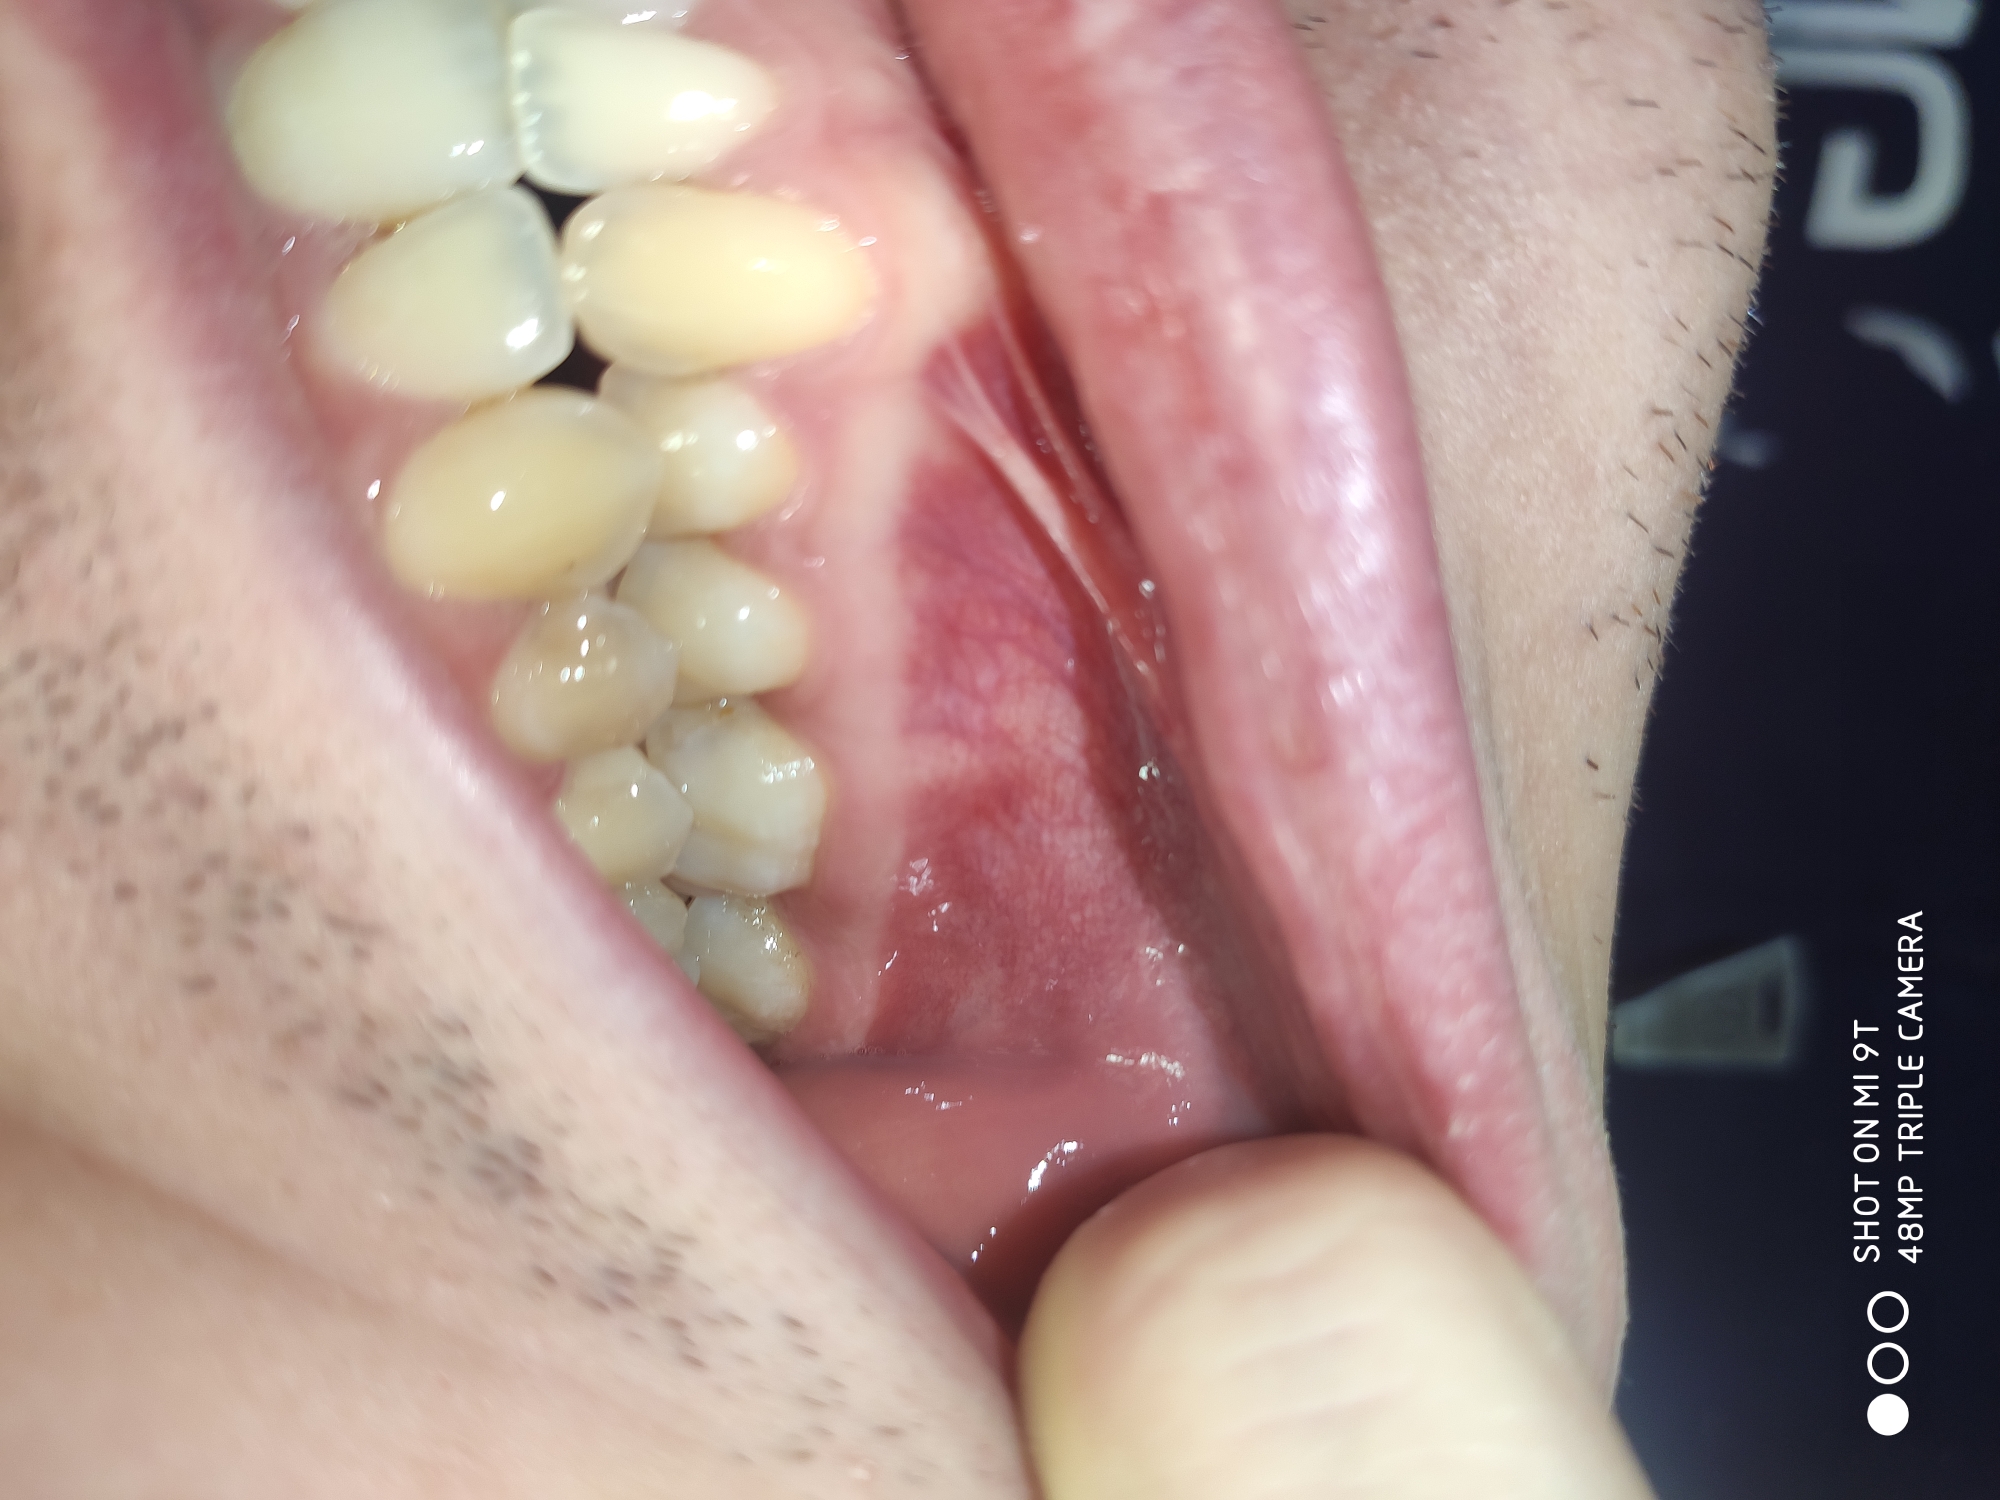 E' normale quel rigonfiamento bianco sotto al dente 46?